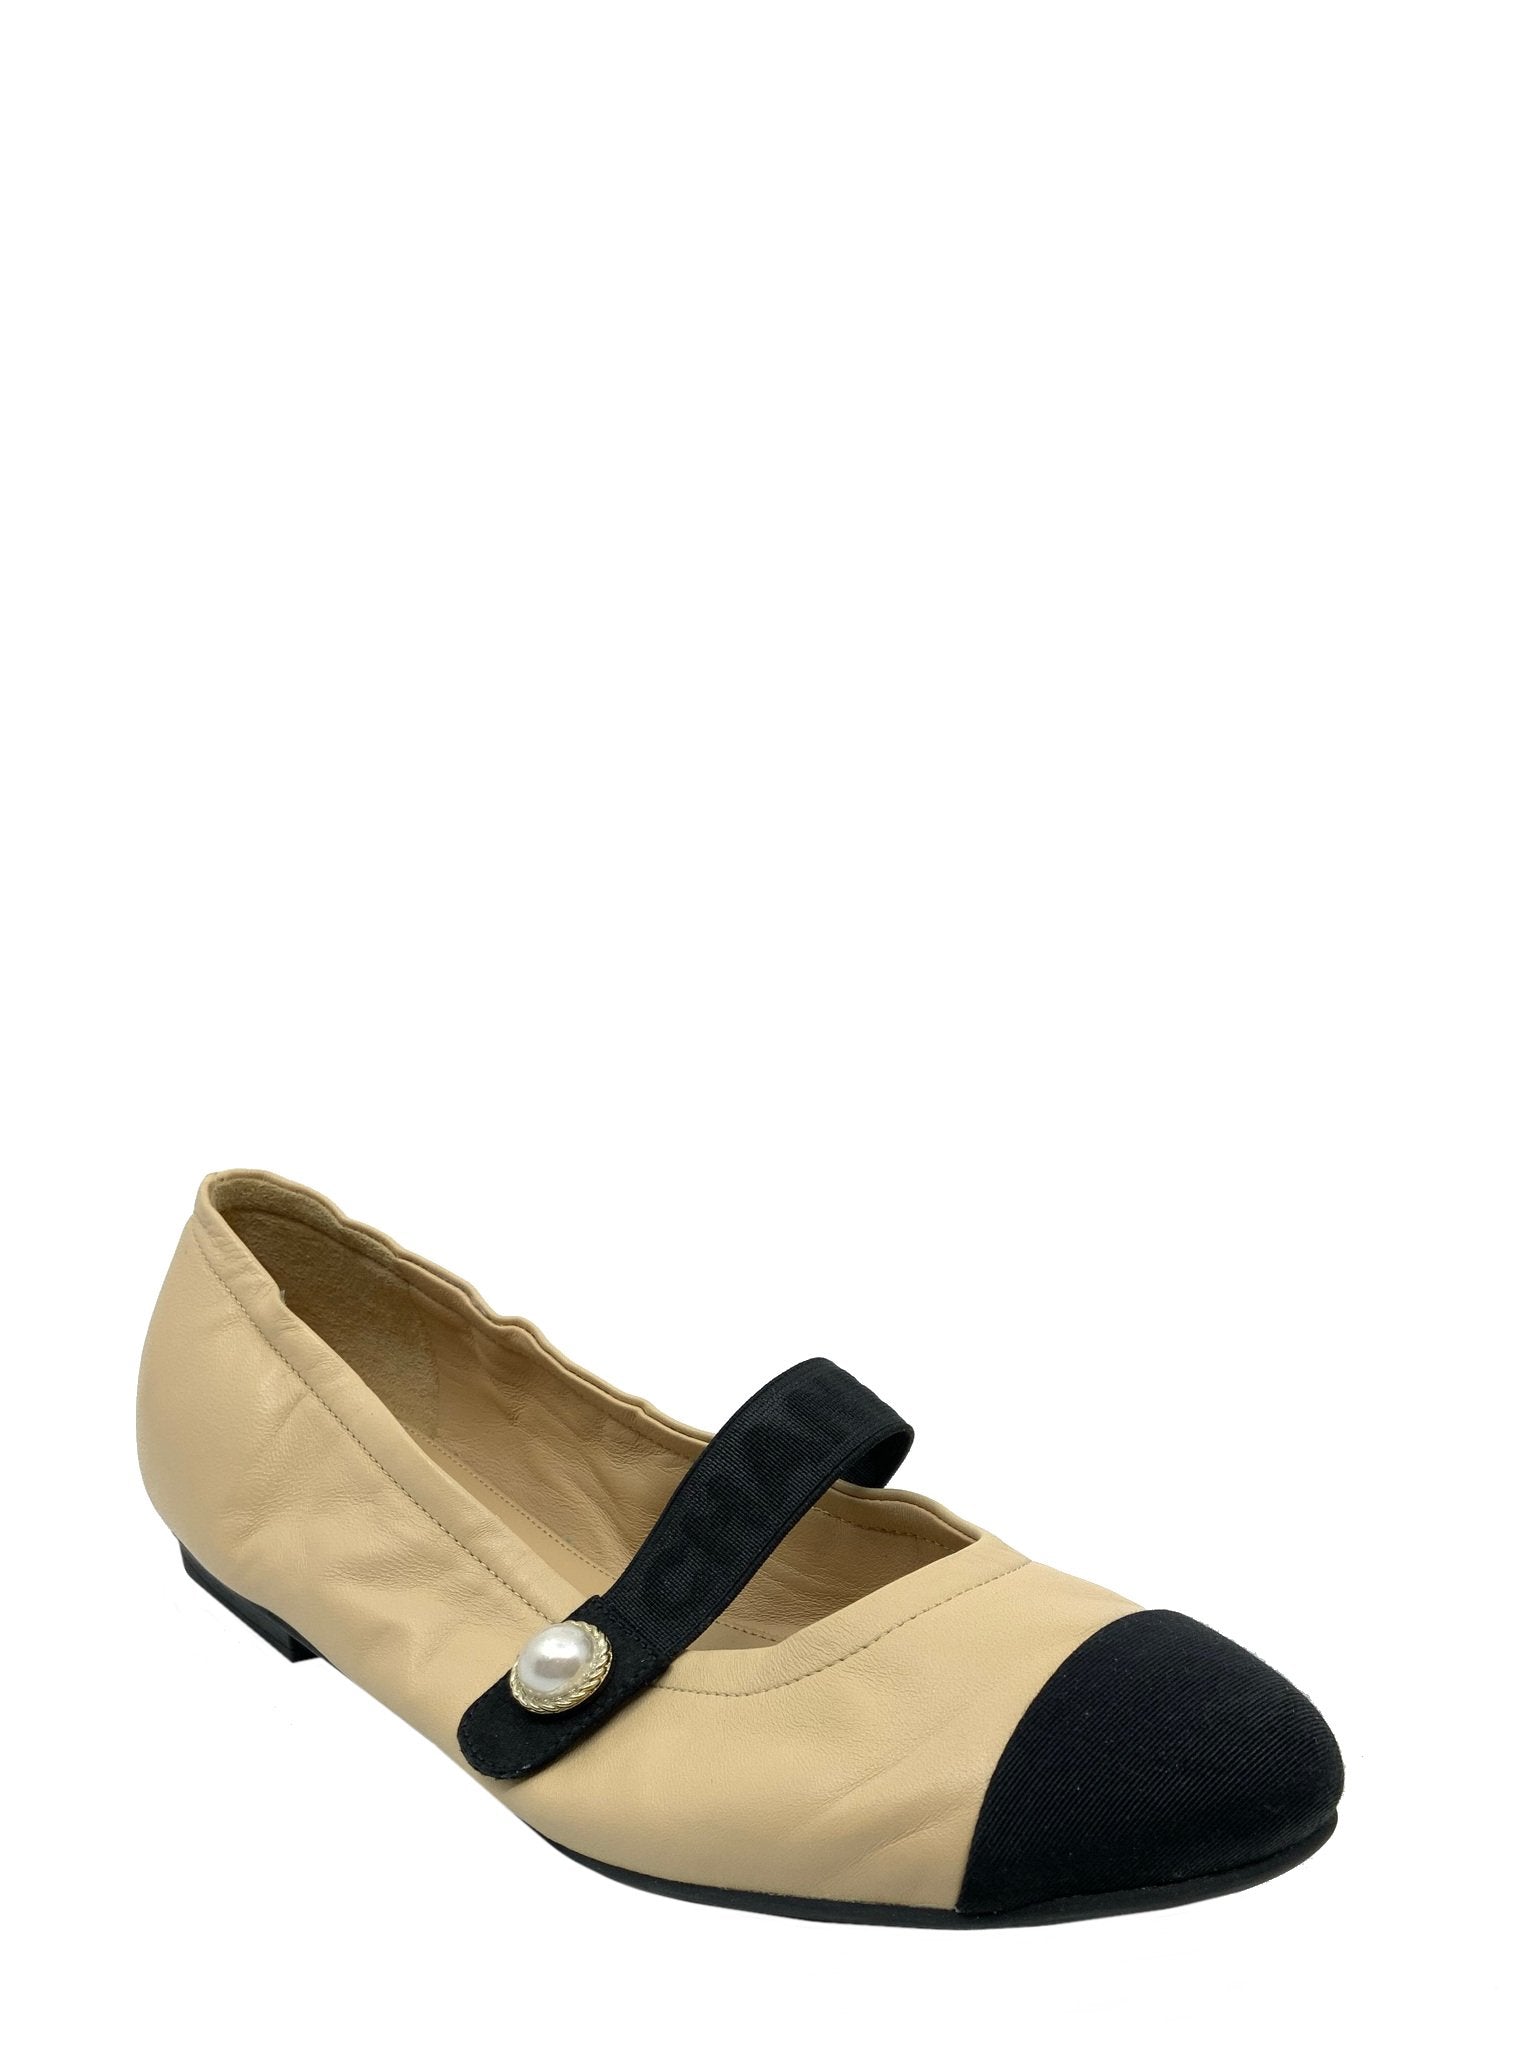 Chanel Lambskin Cap Toe Ballet Flats Size 9